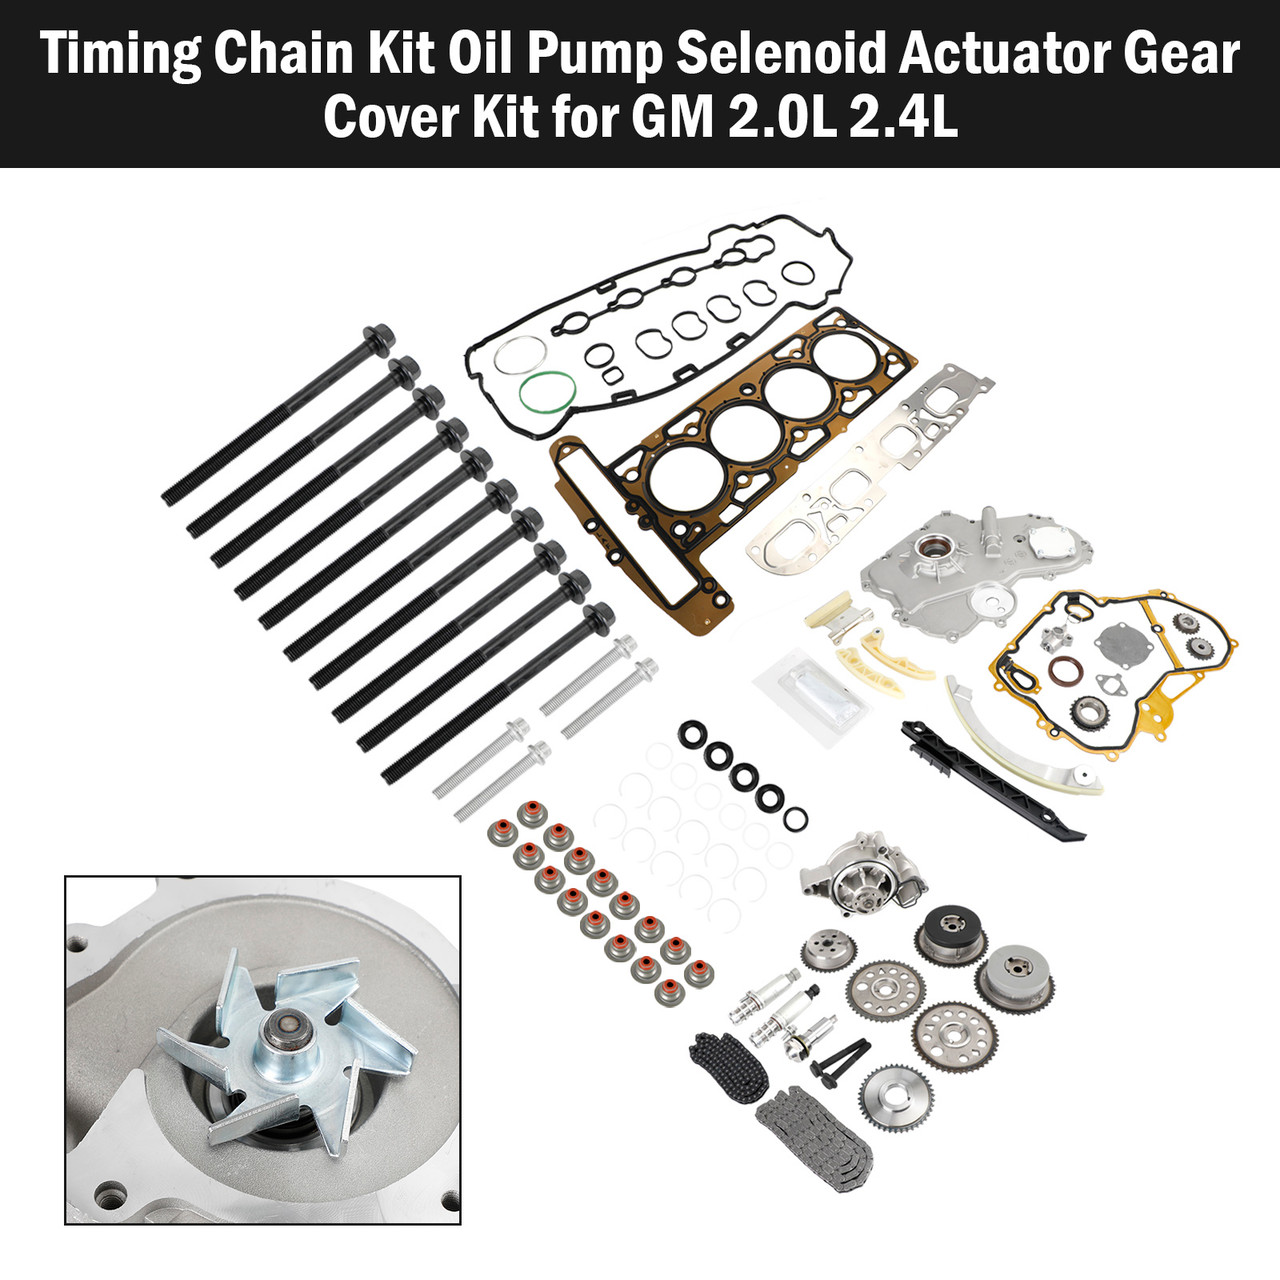 2007-2009 PONTIAC SOLSTICE 2.0L Timing Chain Kit Oil Pump Selenoid Actuator Gear Cover Kit